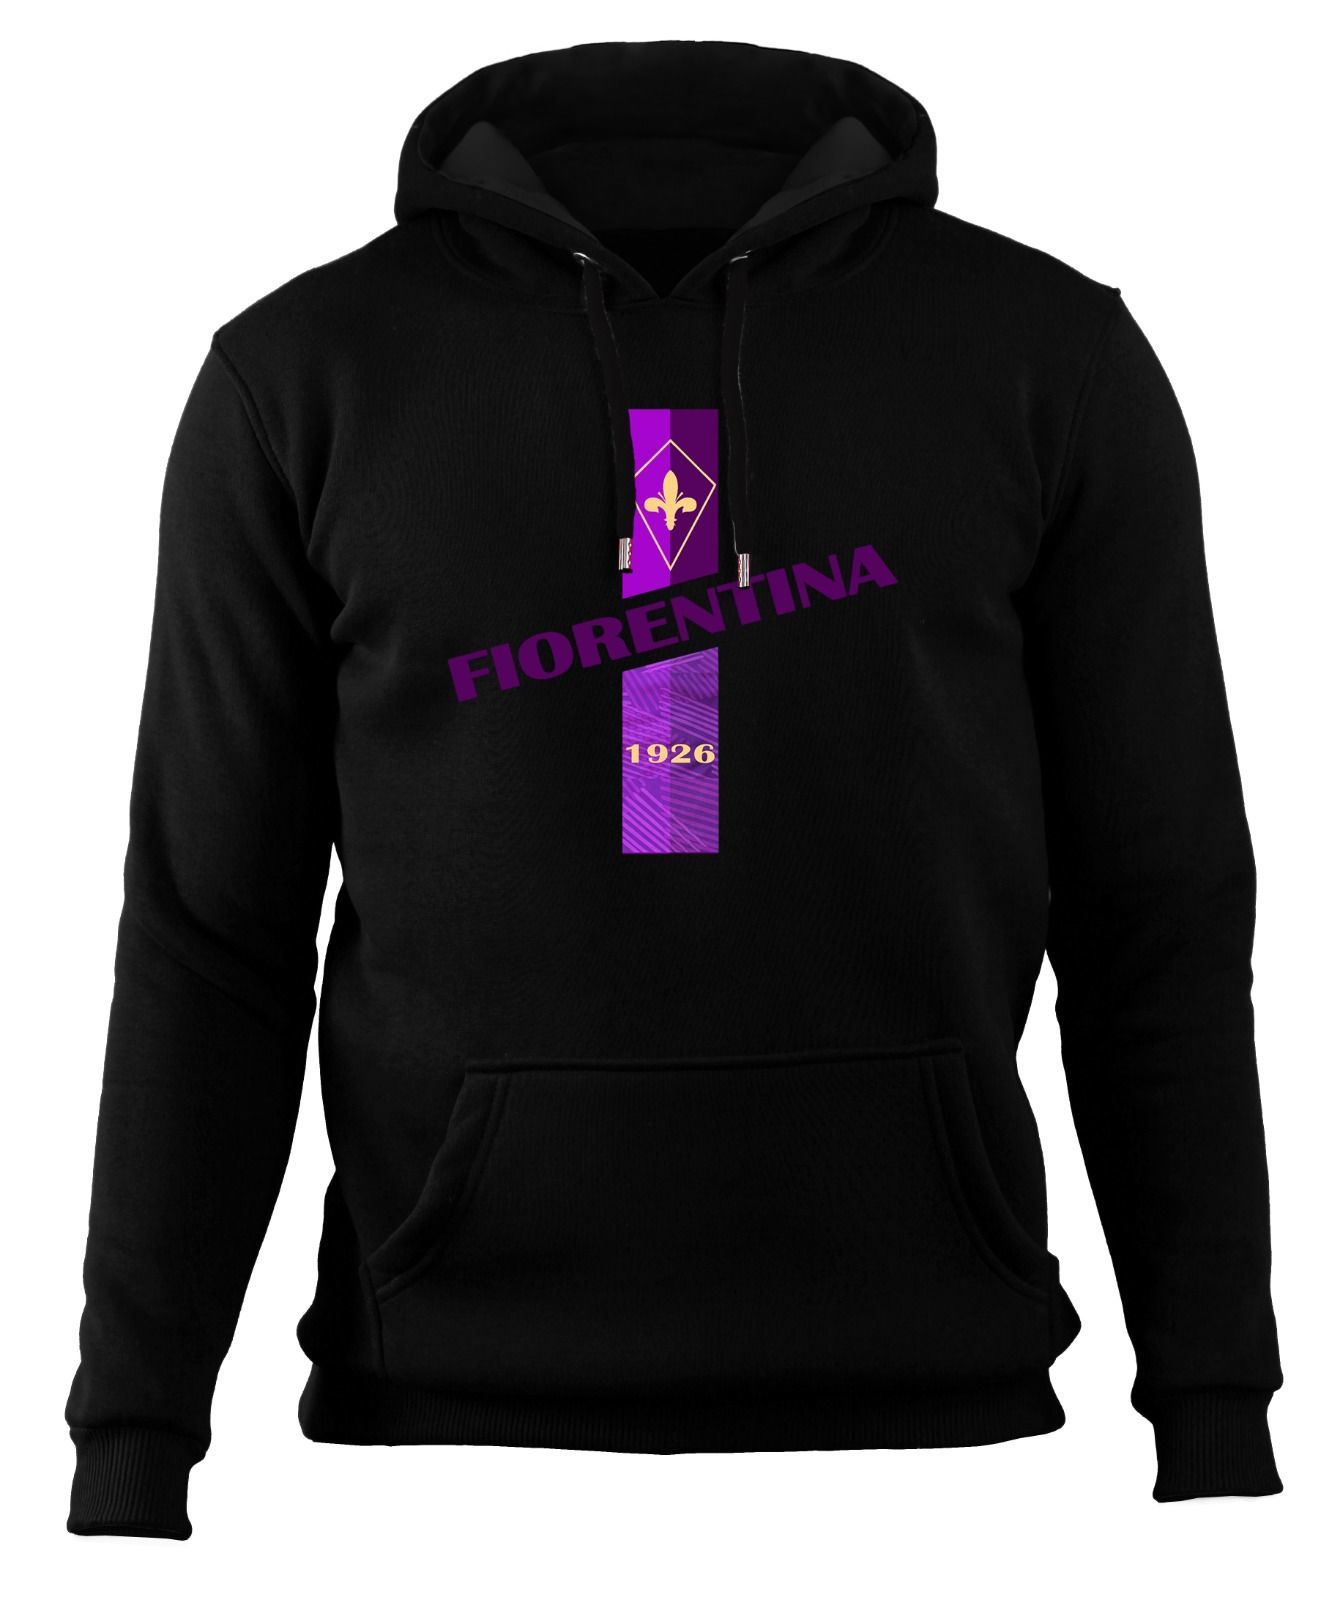 Fiorentina 1926 - Sweatshirt